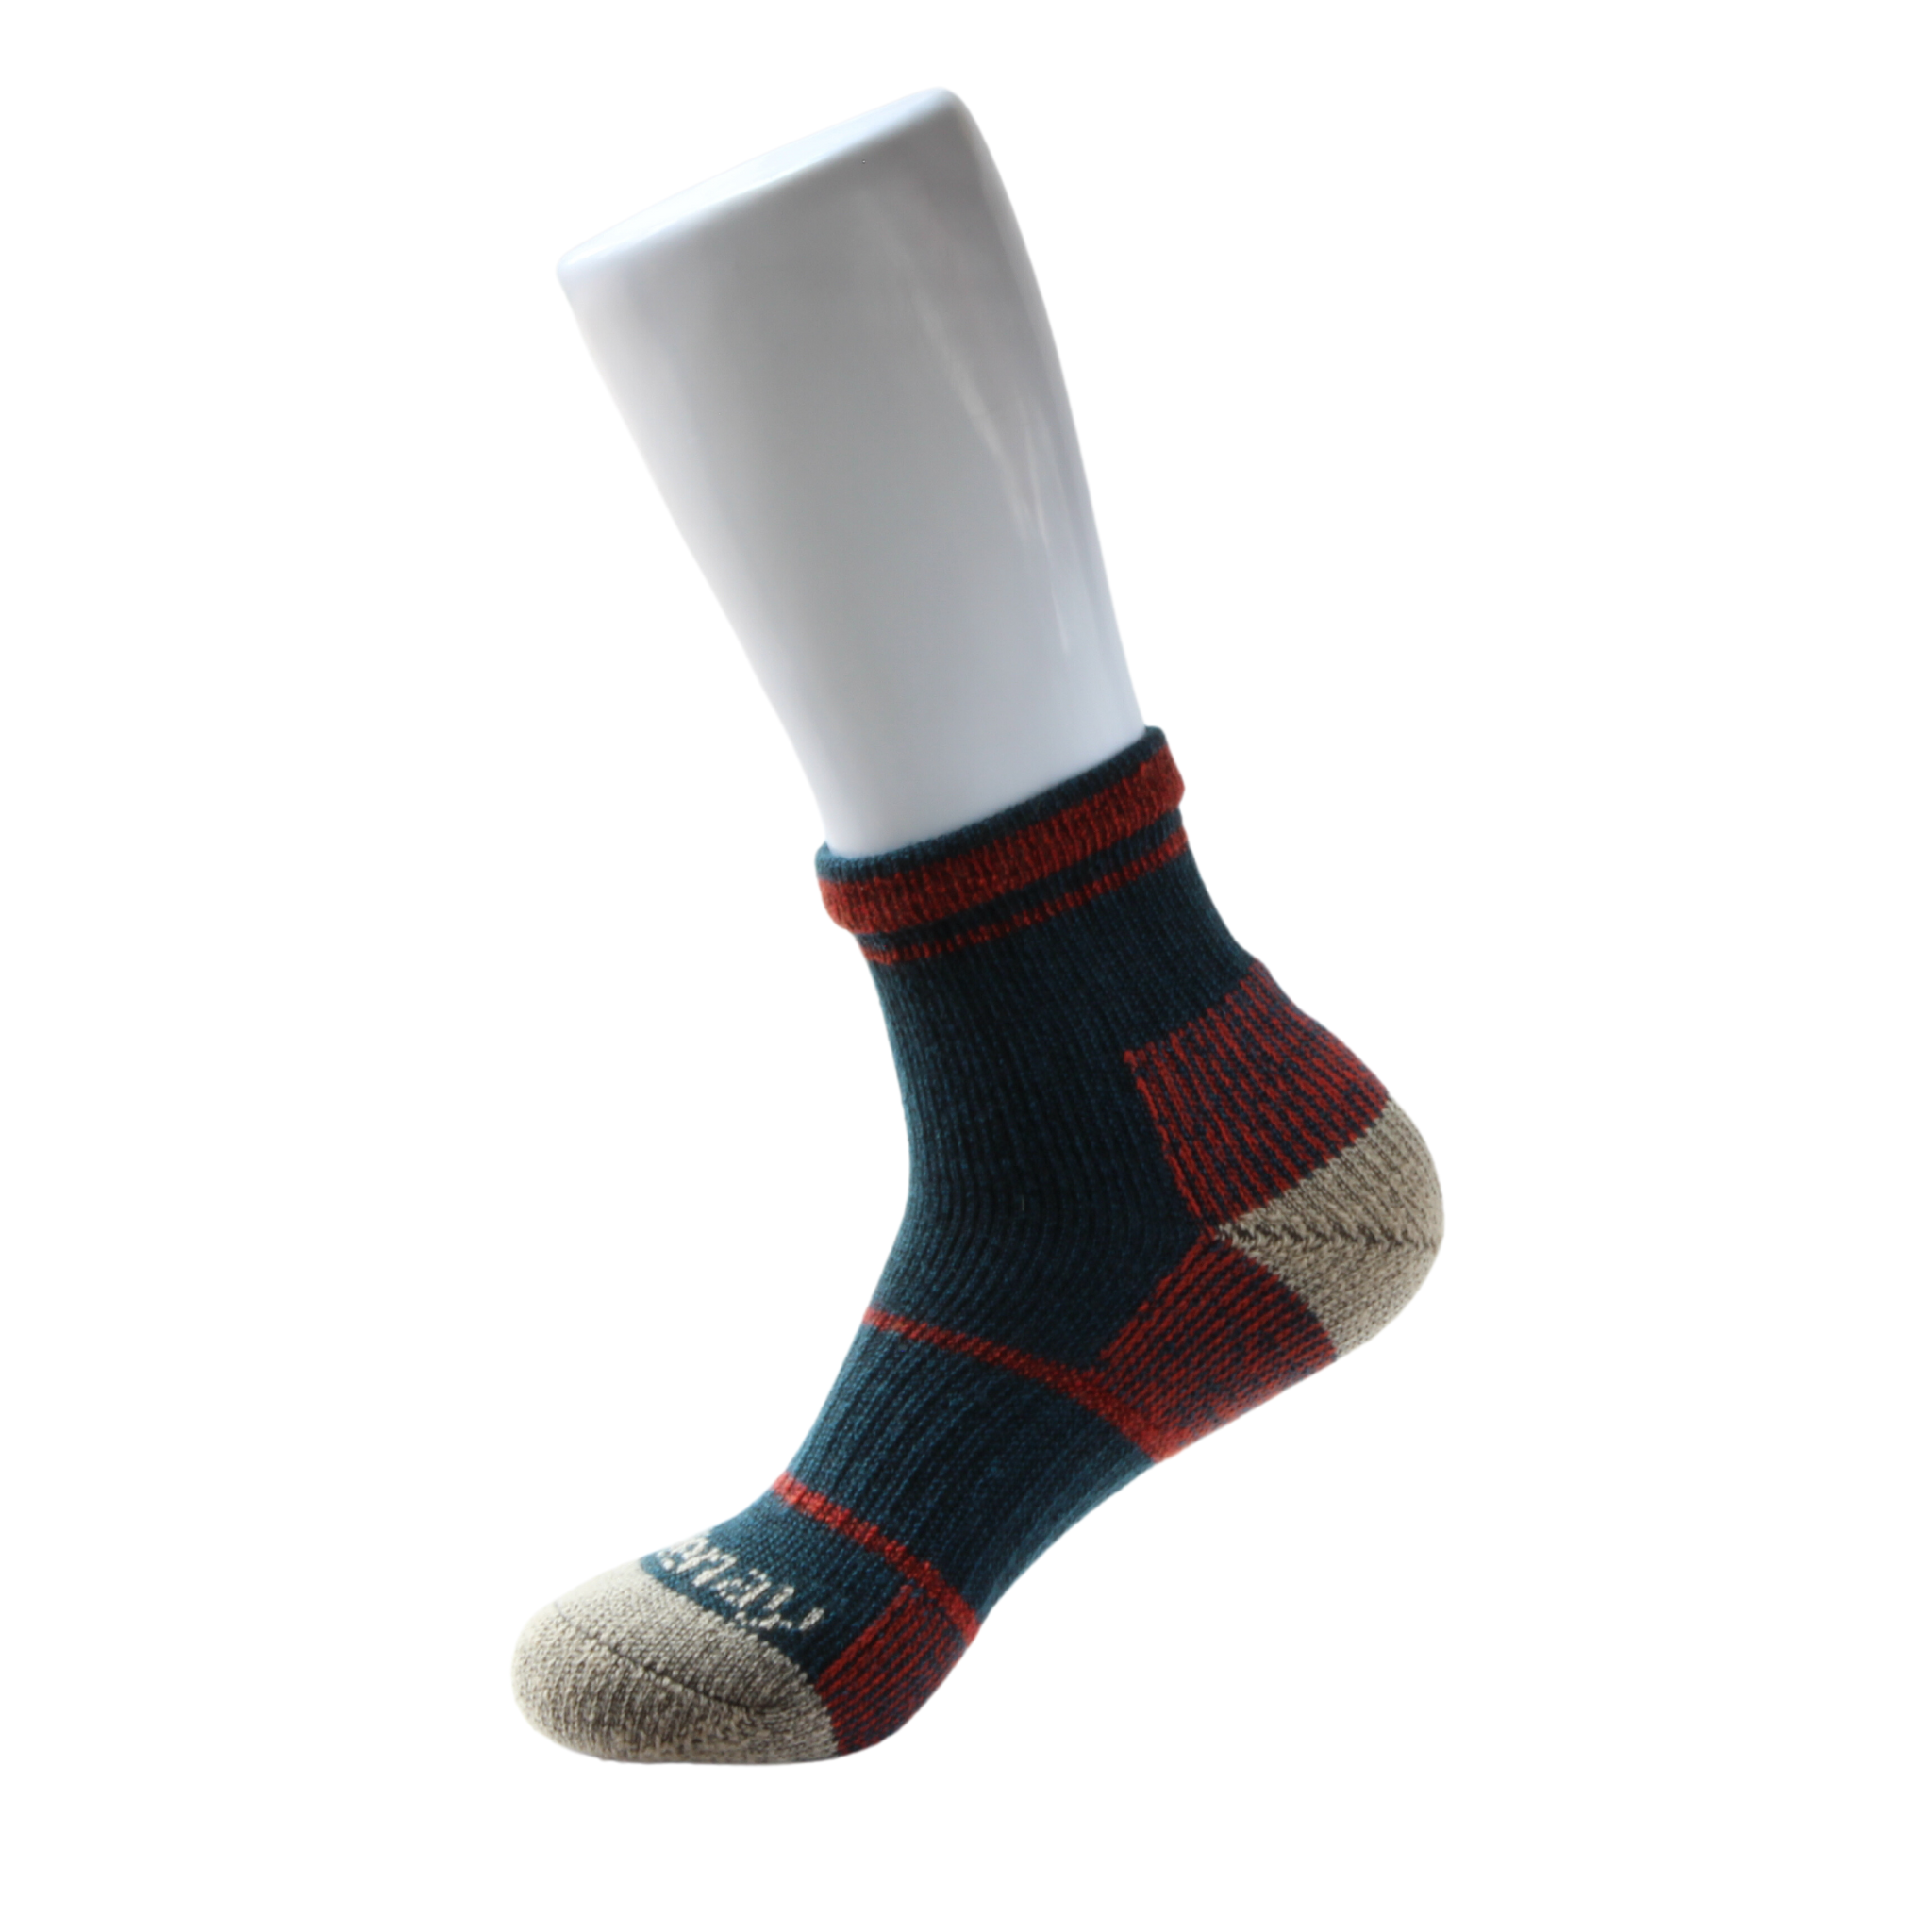 Men's Merino Multi Sport 4.0 eXtreme socks by Wilderness Wear.